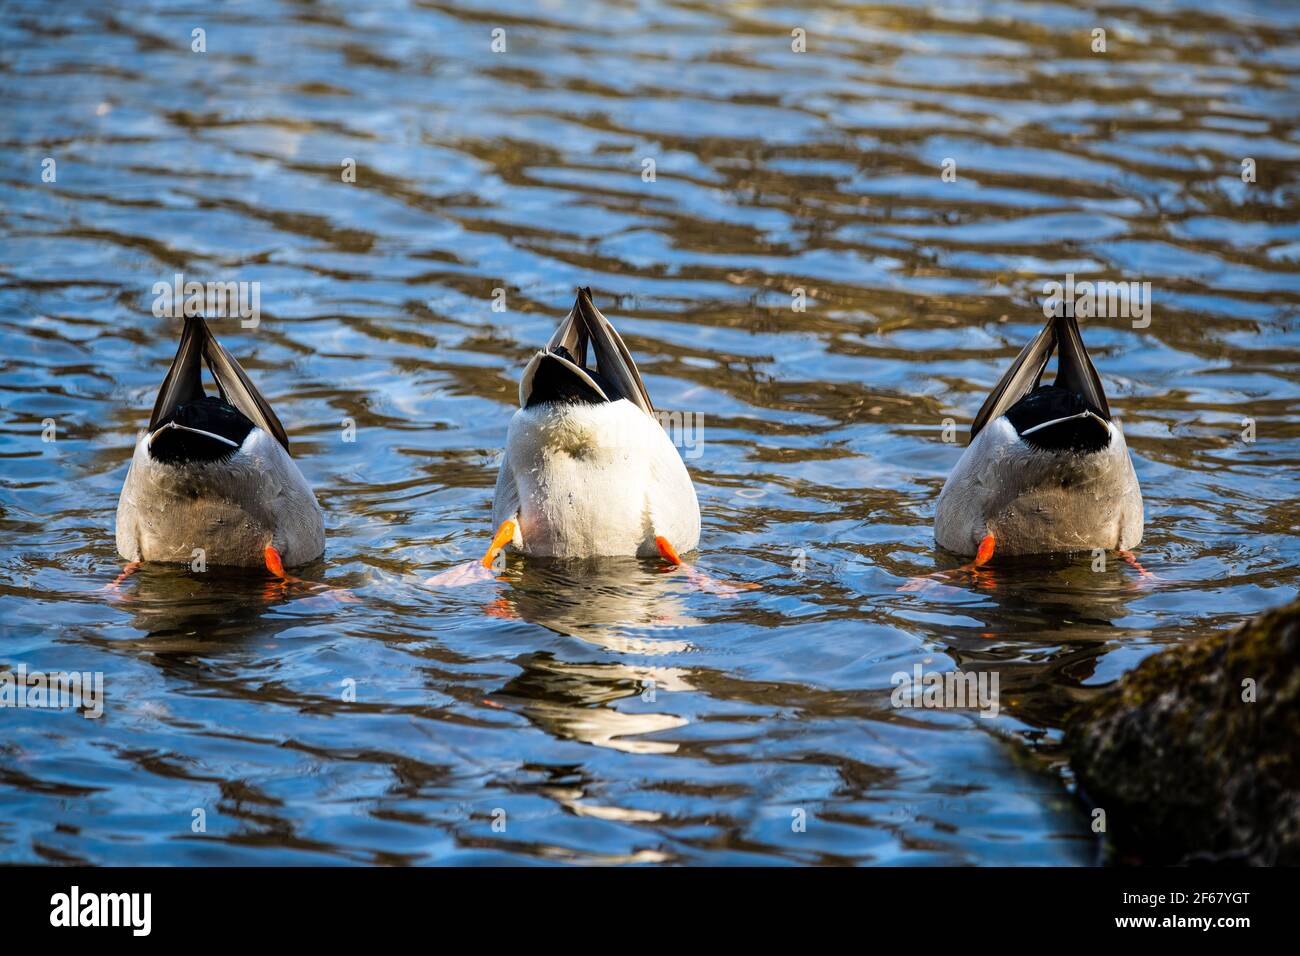 divertente vista posteriore della sincronizzazione di tre anatre pesca nelle acque blu del lago in una giornata di primavera Foto Stock